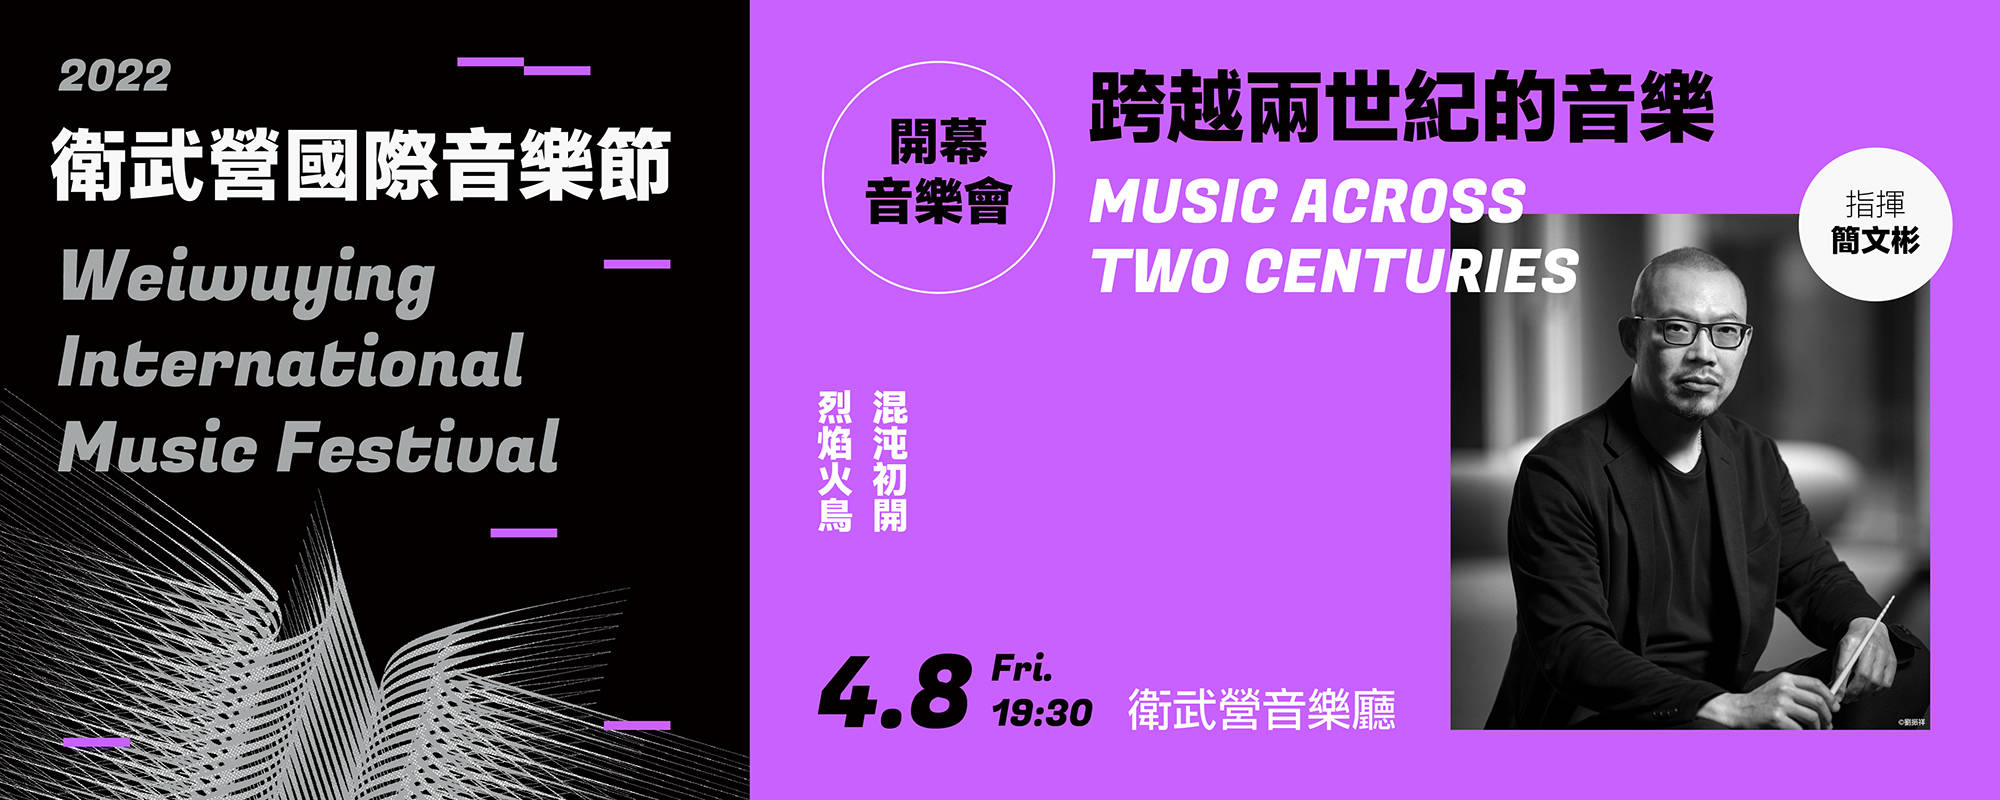 【2022衛武營國際音樂節】開幕音樂會《跨越兩世紀的音樂》